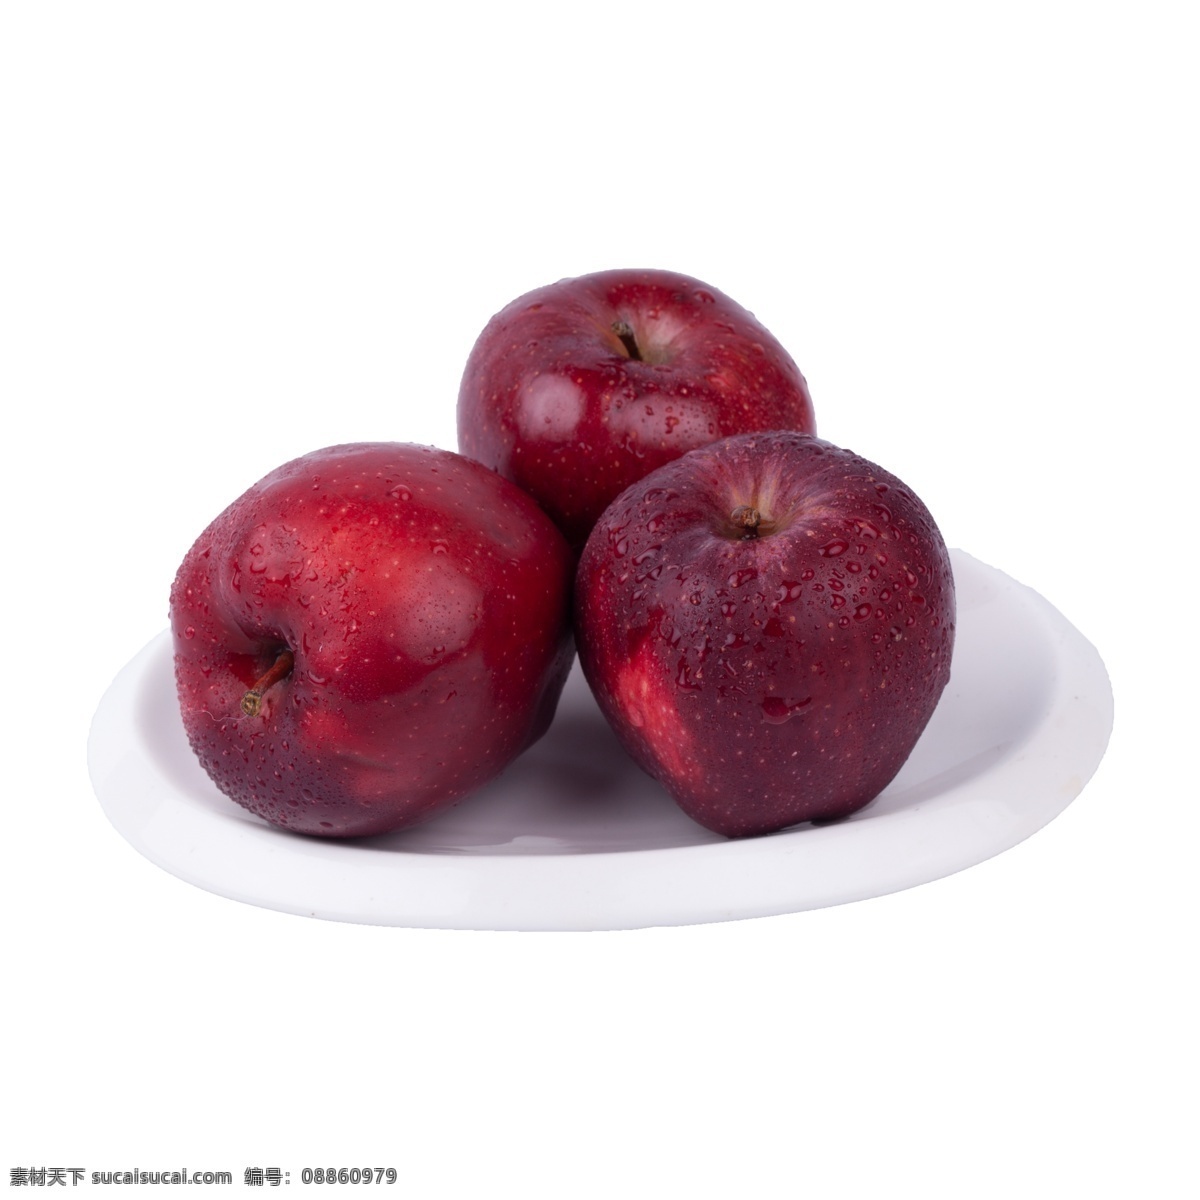 苹果 实拍 免 抠 红苹果 水果 营养 红富士 实物 拍摄 摆拍 红富士免抠 植物 进口 甘甜